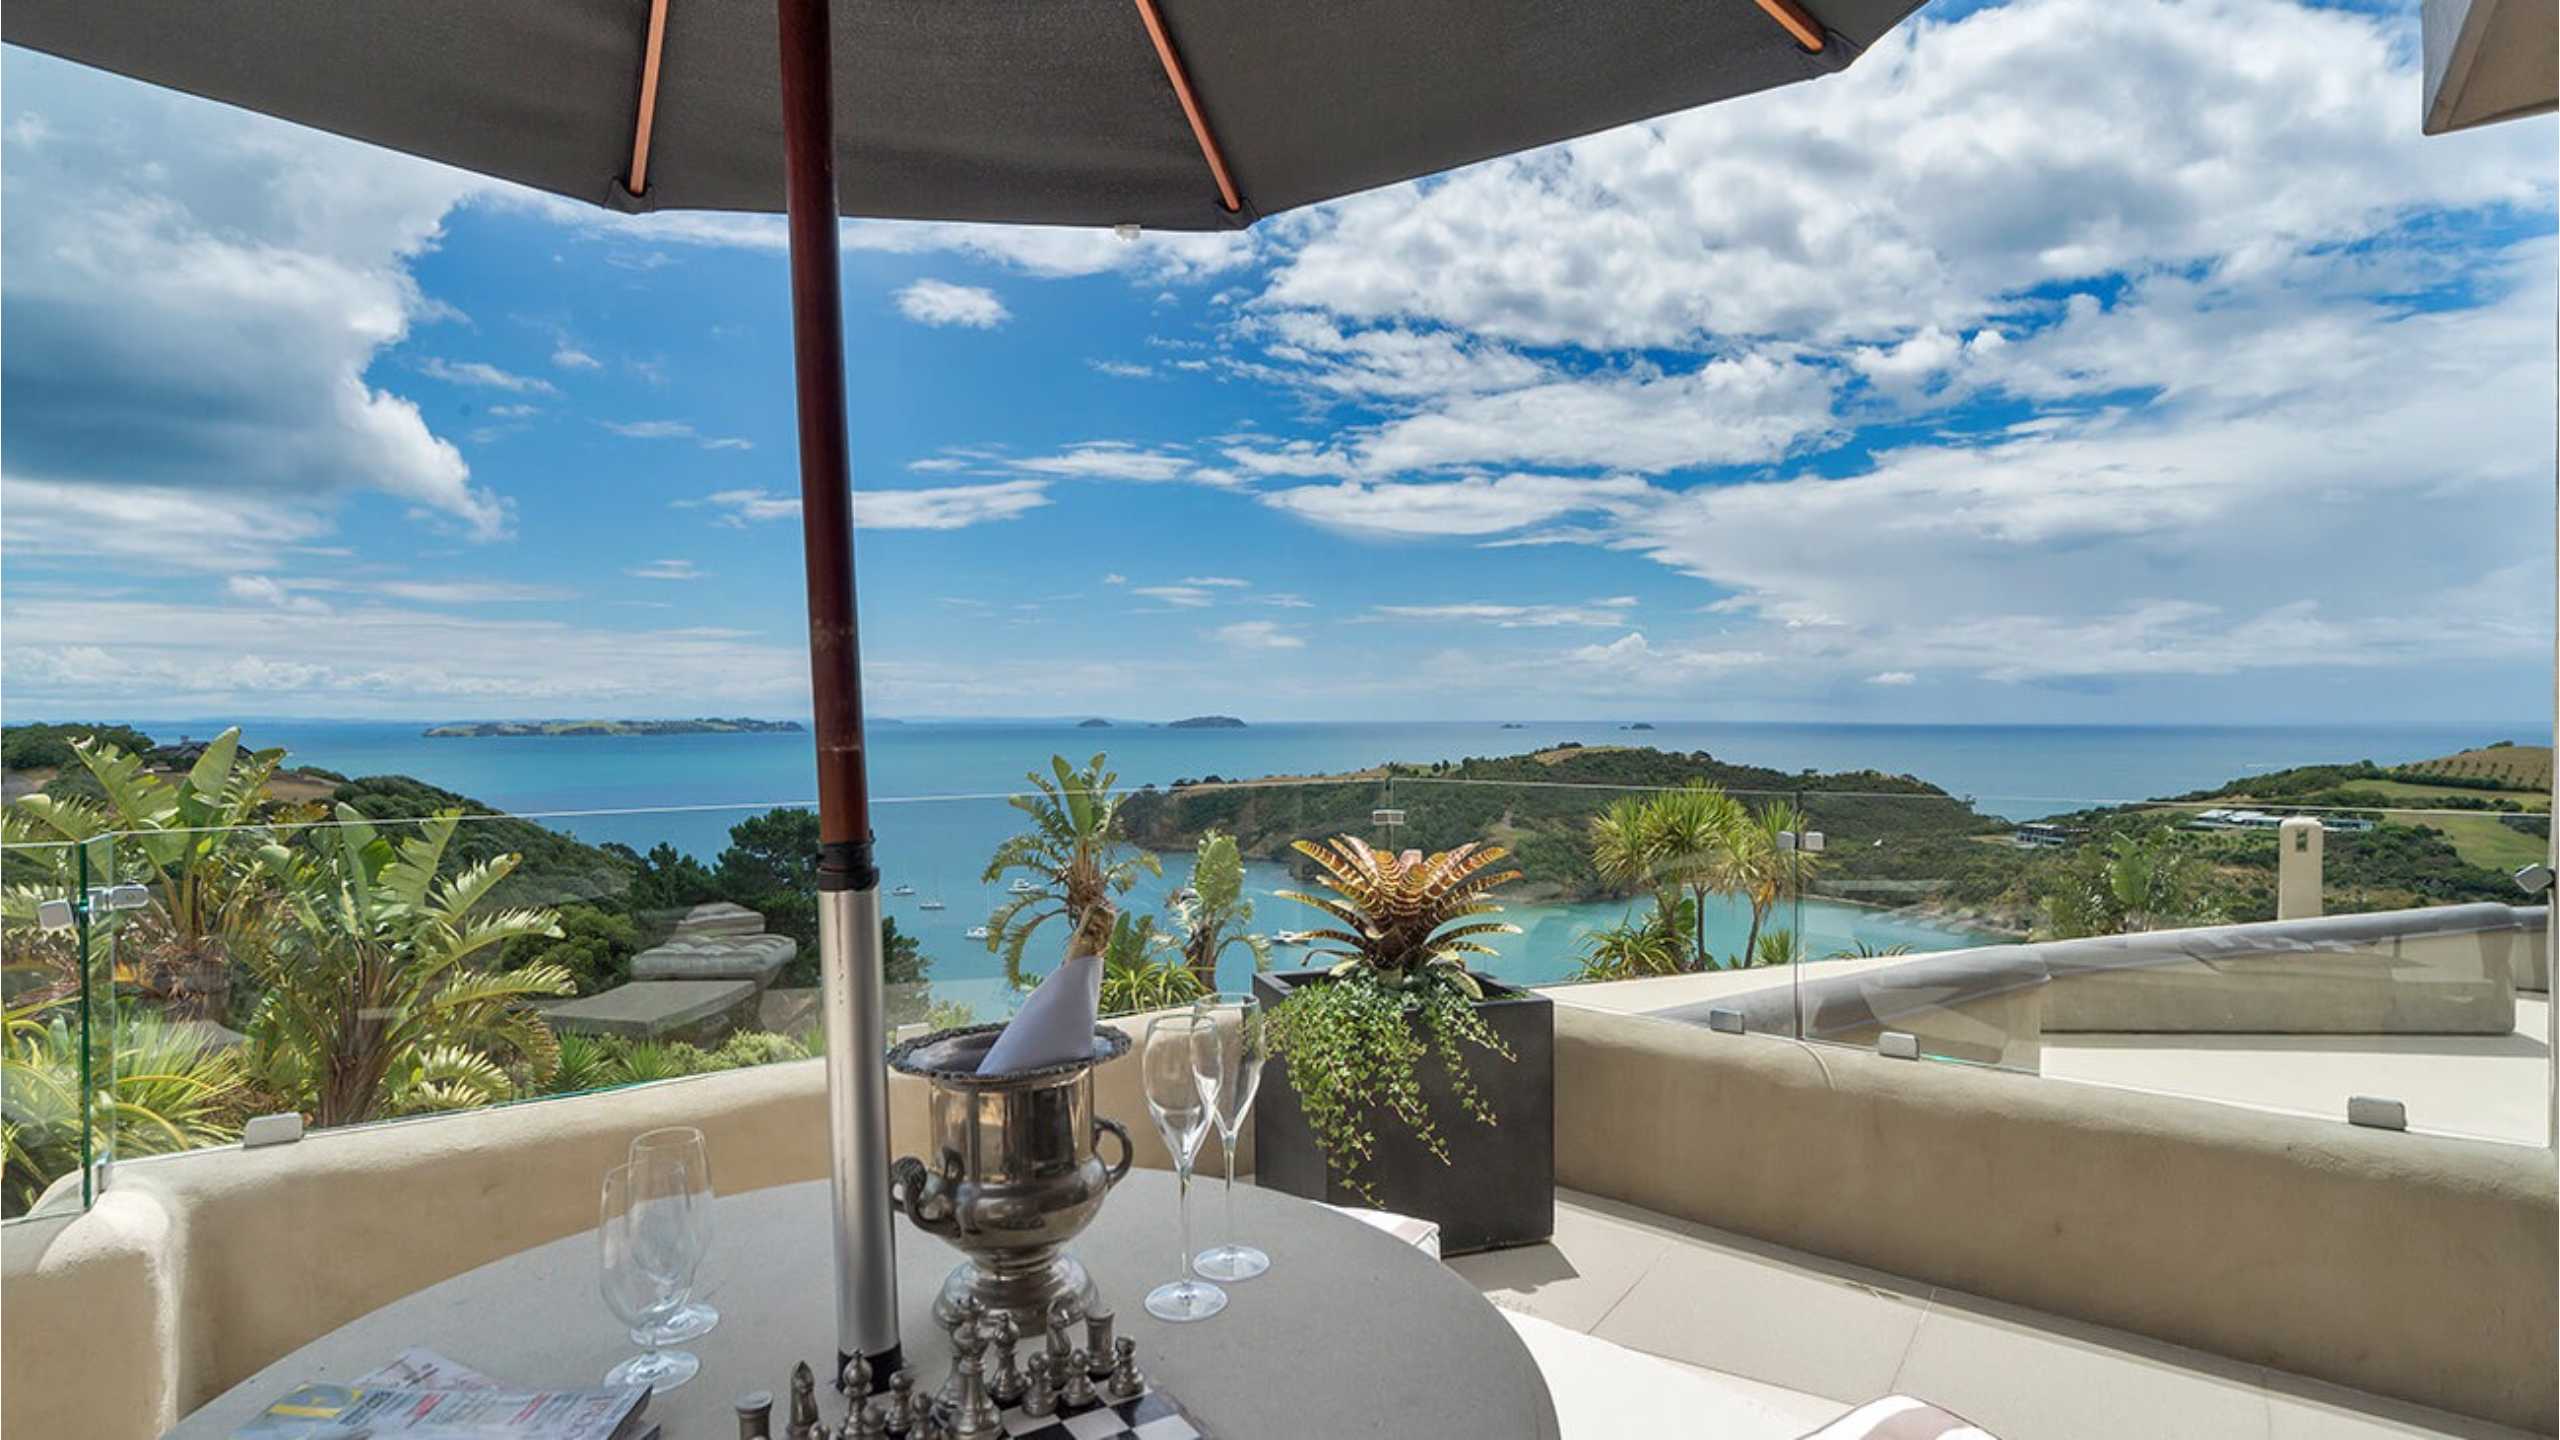 delamore-lodge-luxury-waiheke-island-new-zealand-balcony-dining